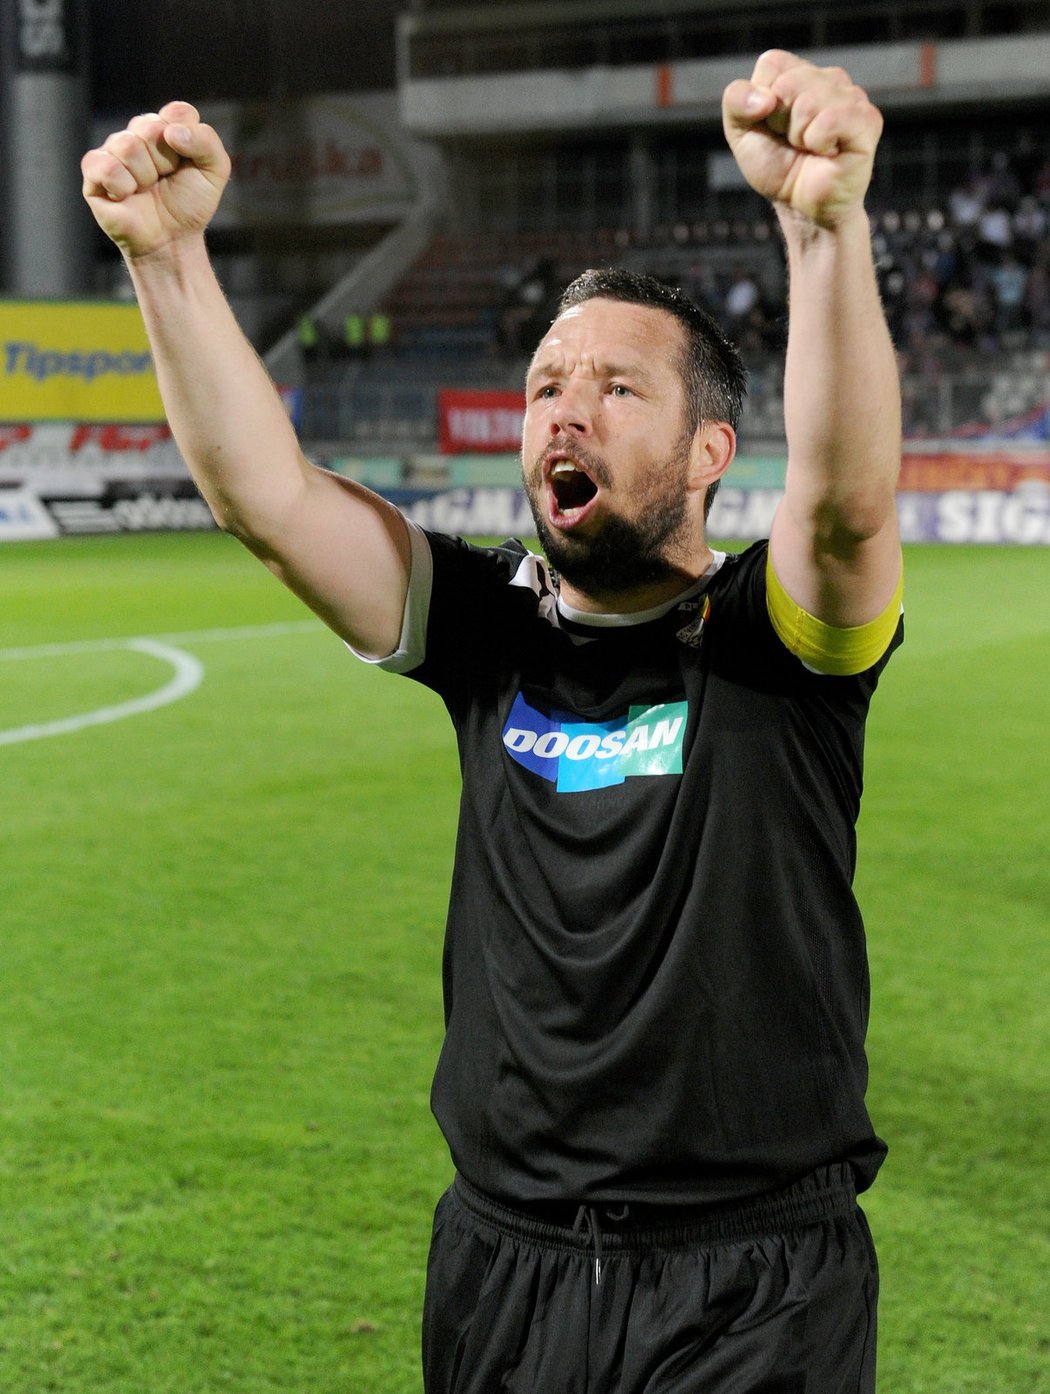 Plzeňský kapitán Pavel Horváth a jeho gesto triumfu po výhře na půdě Sigmy Olomouc. Horváth v zápase nedal penaltu, když ale jeho tým vyhrál, mocně se radoval